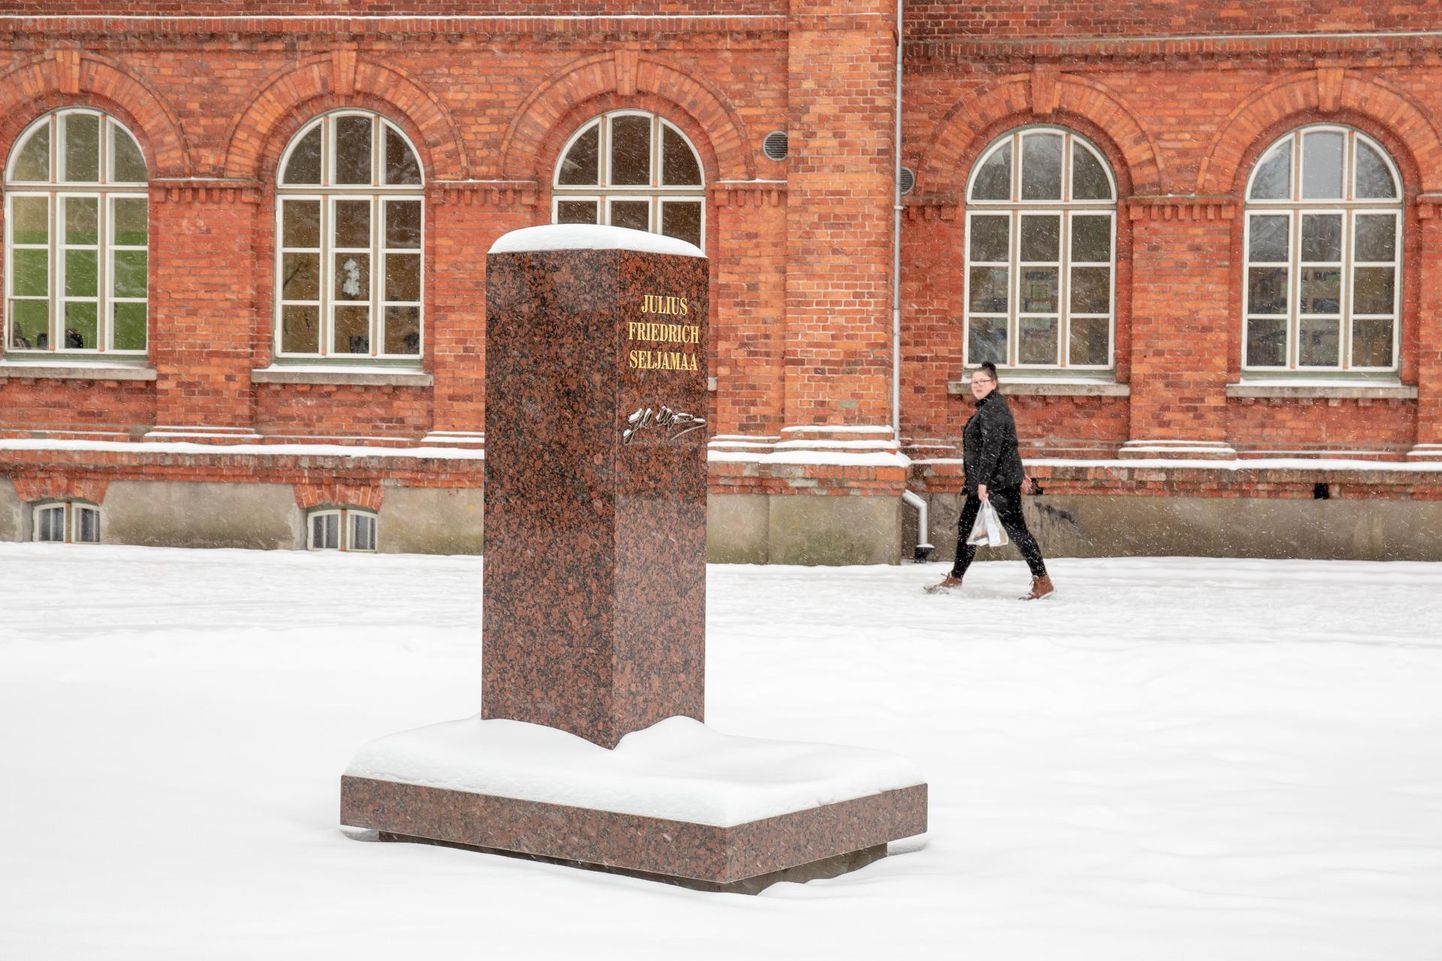 Sindi gümnaasiumi esisel platsil on paigas Julius Friedrich Seljamaa monumendi alus, avamine toimub 2. veebruaril.